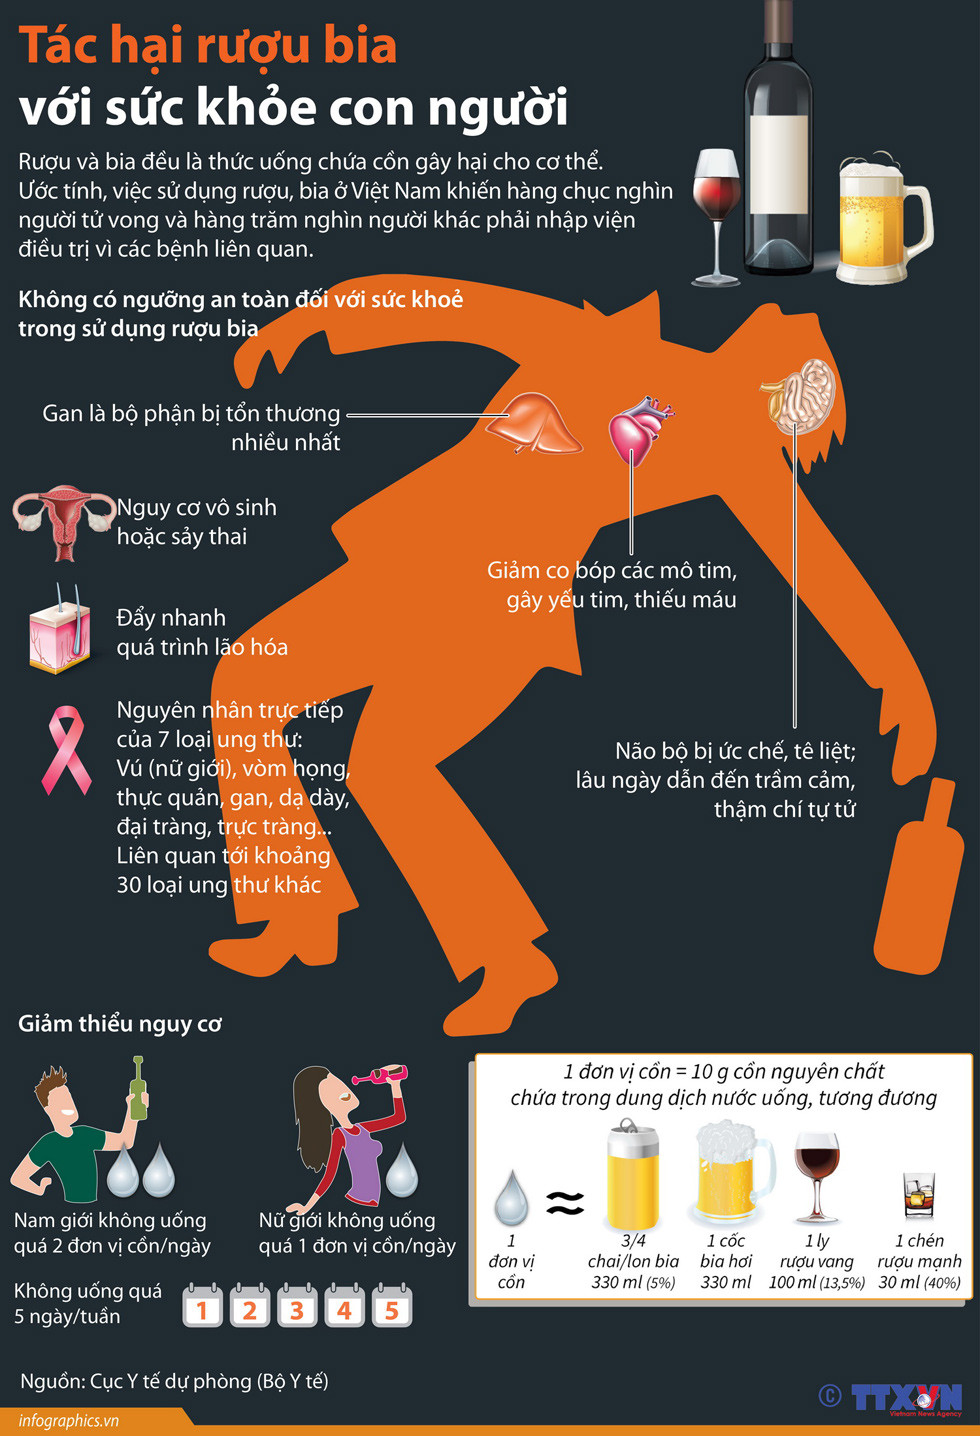 Tác hại rượu bia với sức khỏe con người